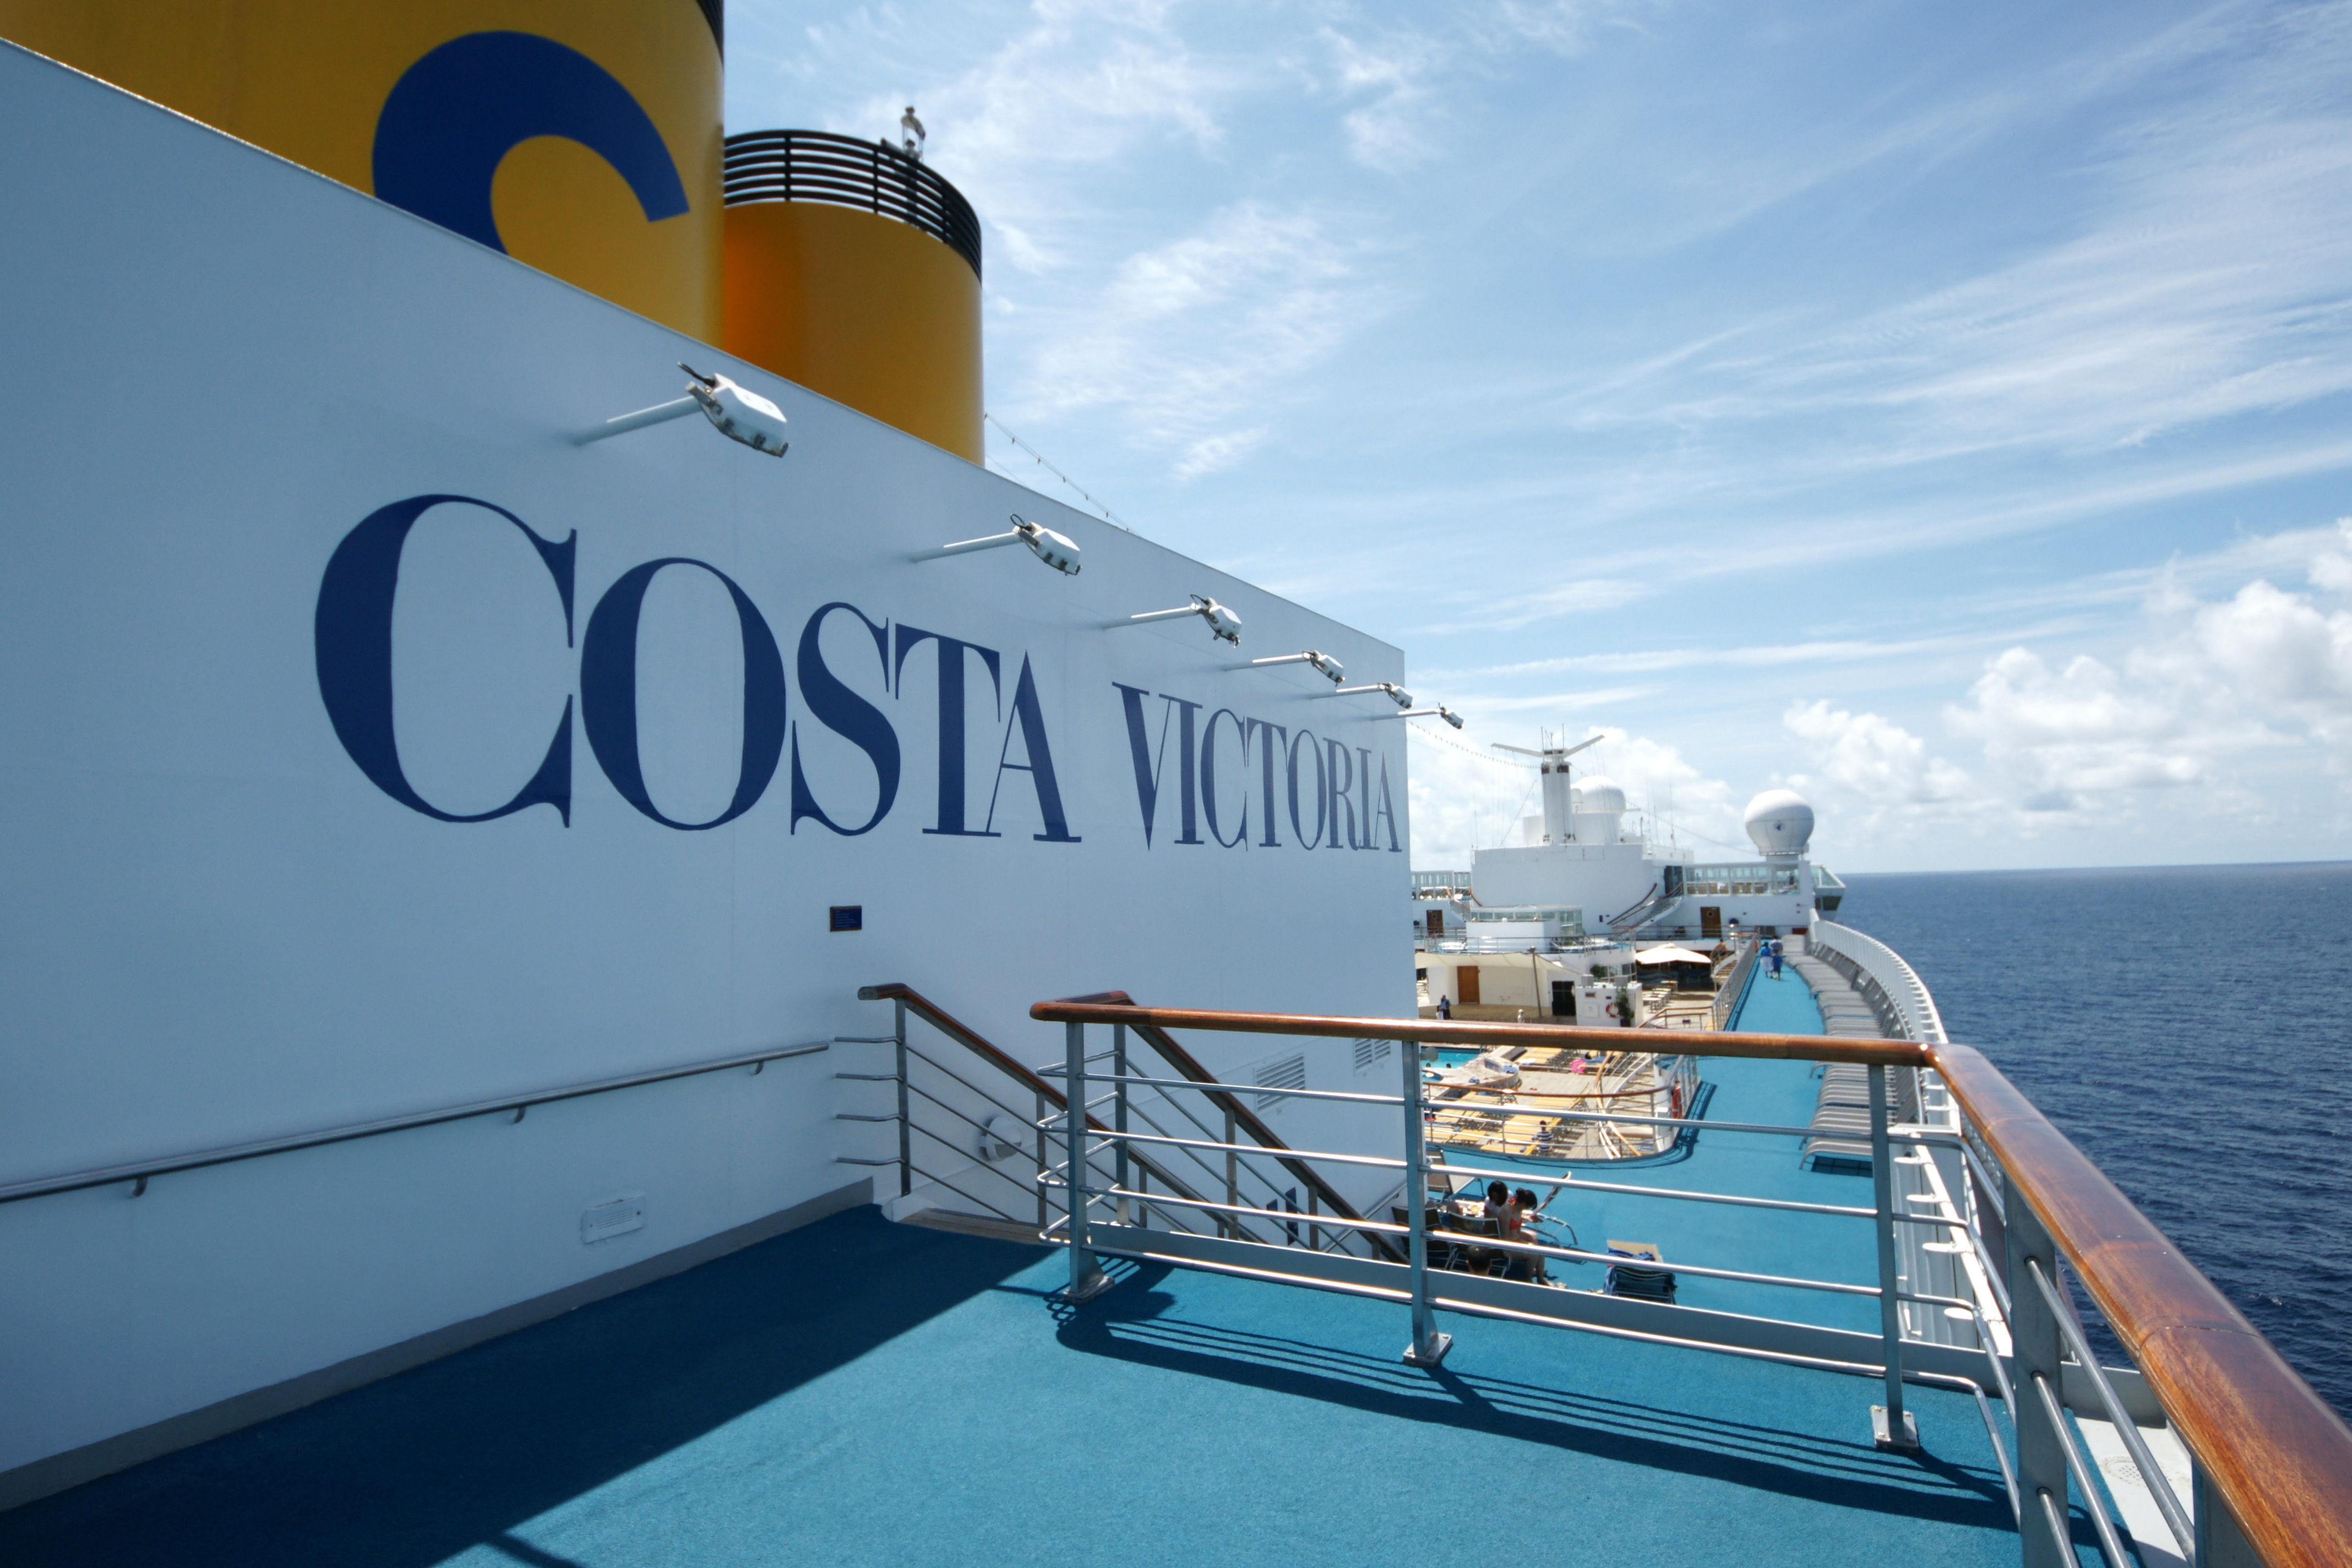 Costa Victoria - Cruceros Super Todo incluido 2018. Cruceros todo incluido